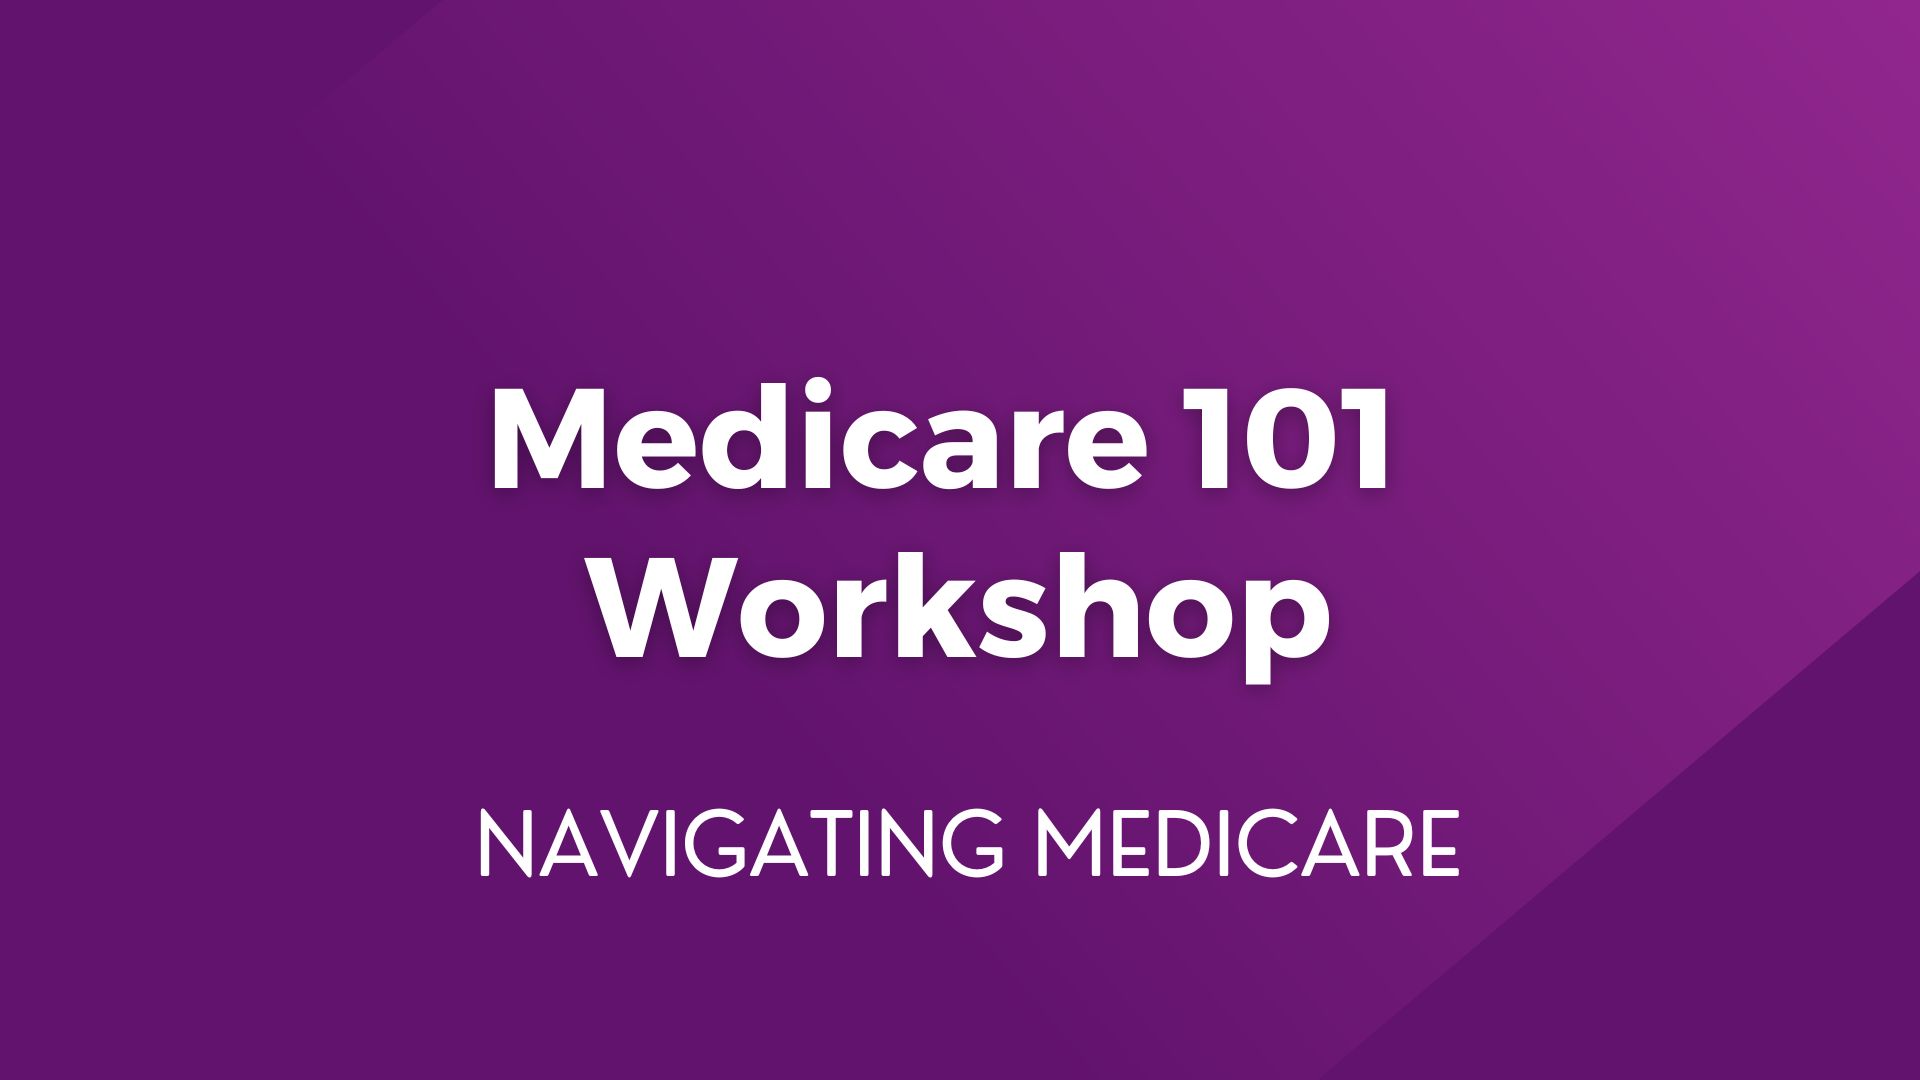 Medicare 101 Workshop – May 15